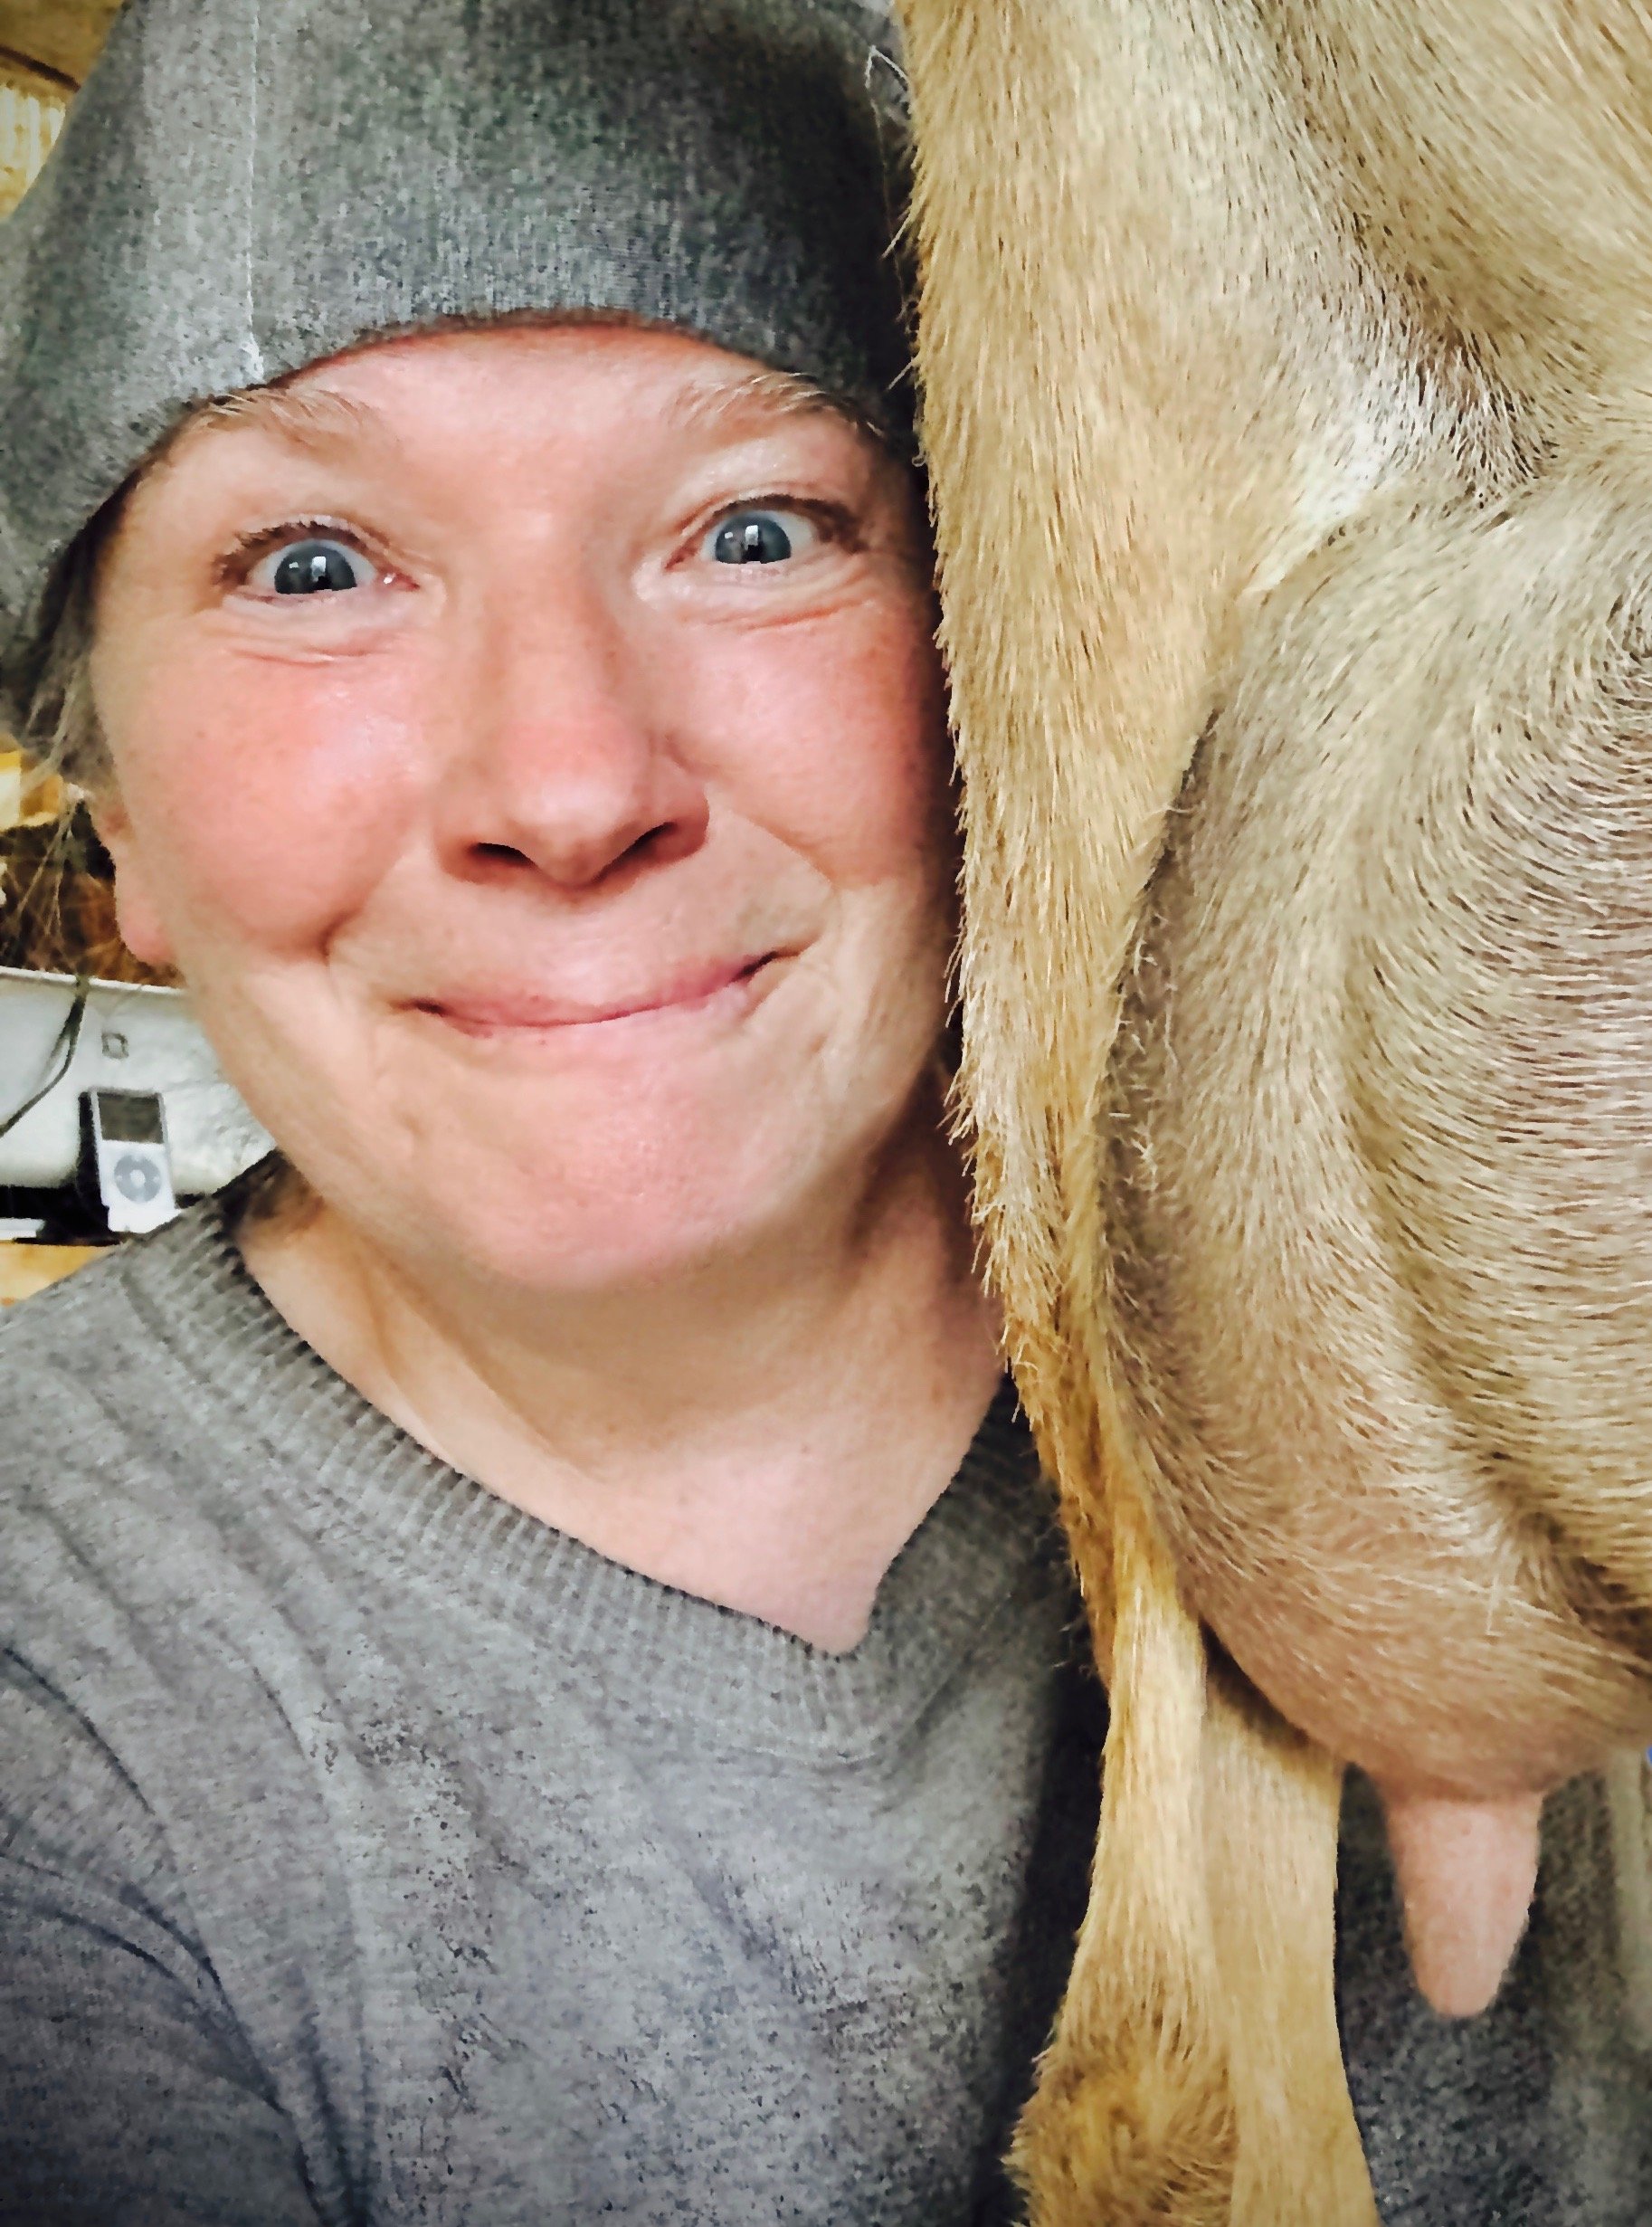 Cheryle milking blondi - first fresh udder - 3 months fresh